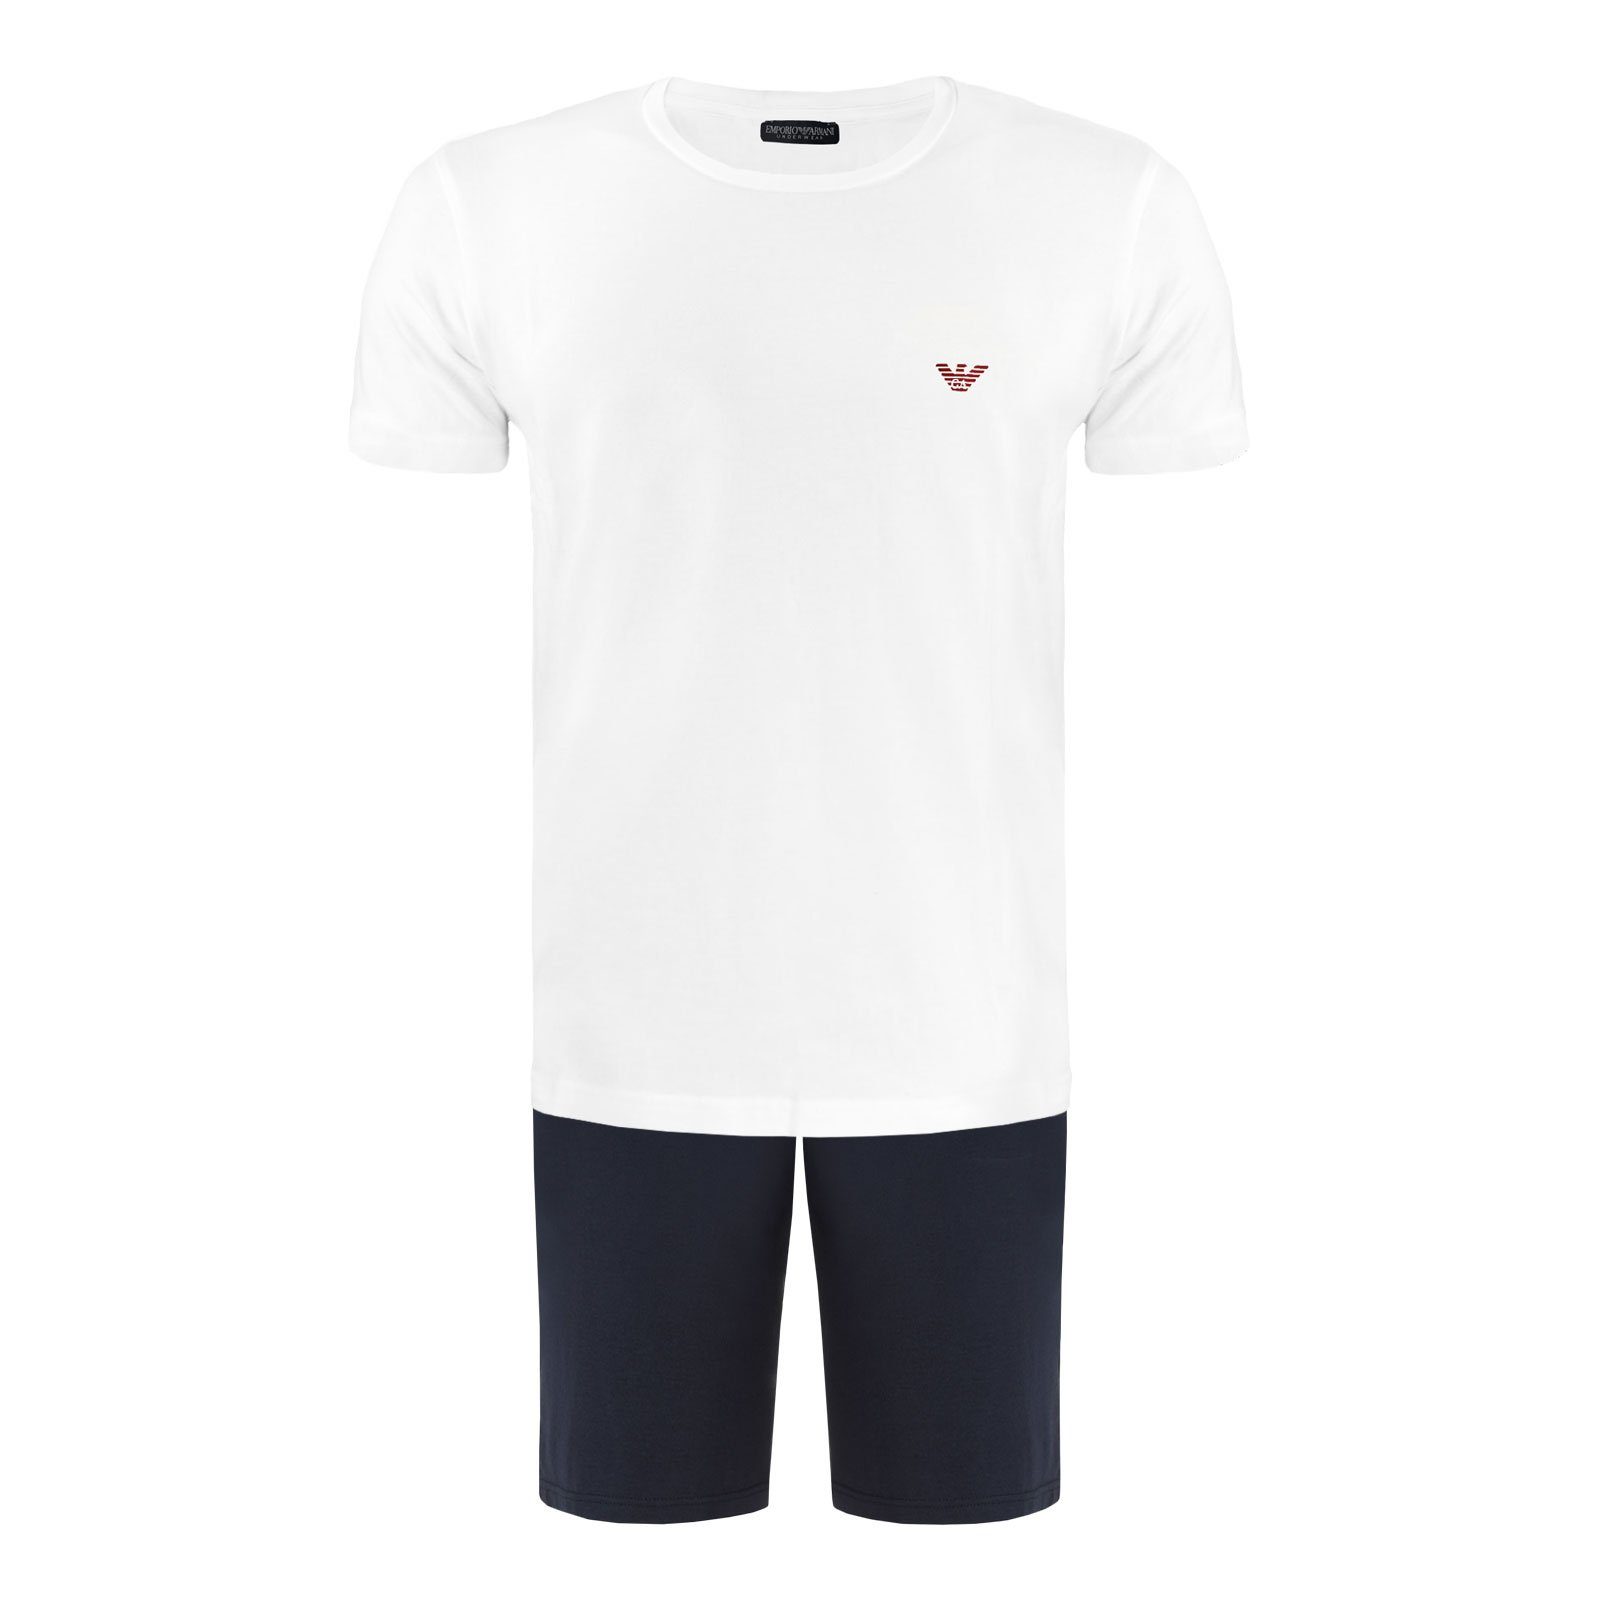 Emporio Armani Schlafanzug Short Pyjama-Set Stretch Cotton (2 tlg) mit Markenlogo auf der Brust 10410 white / navy blue